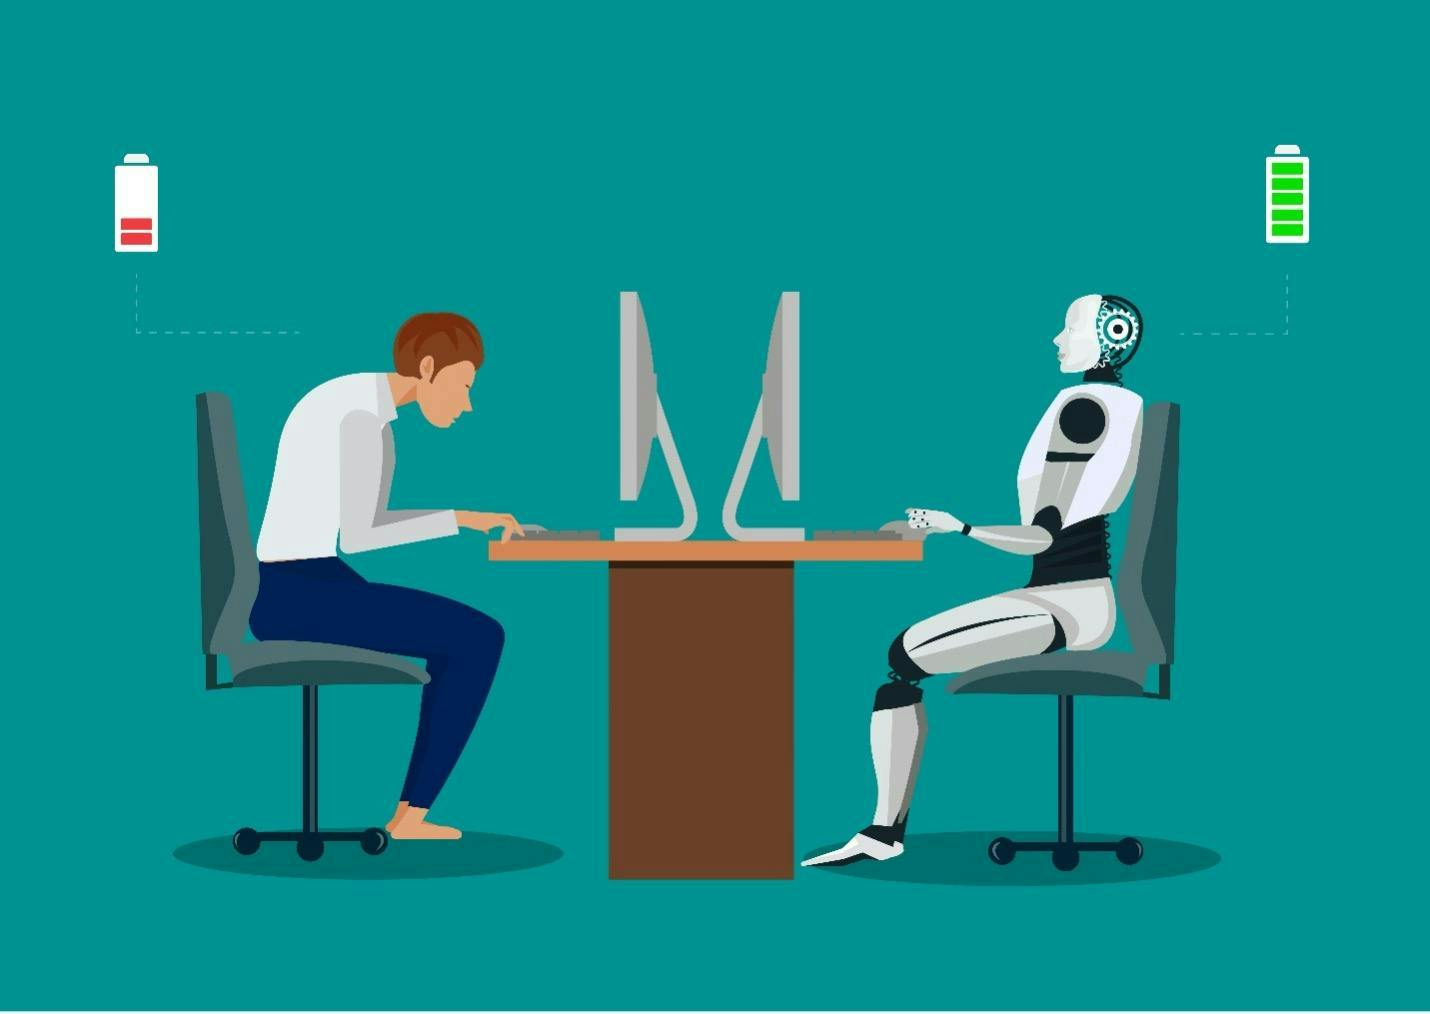 Ihminen ja robotti työskentelevät pöydän ääressä.